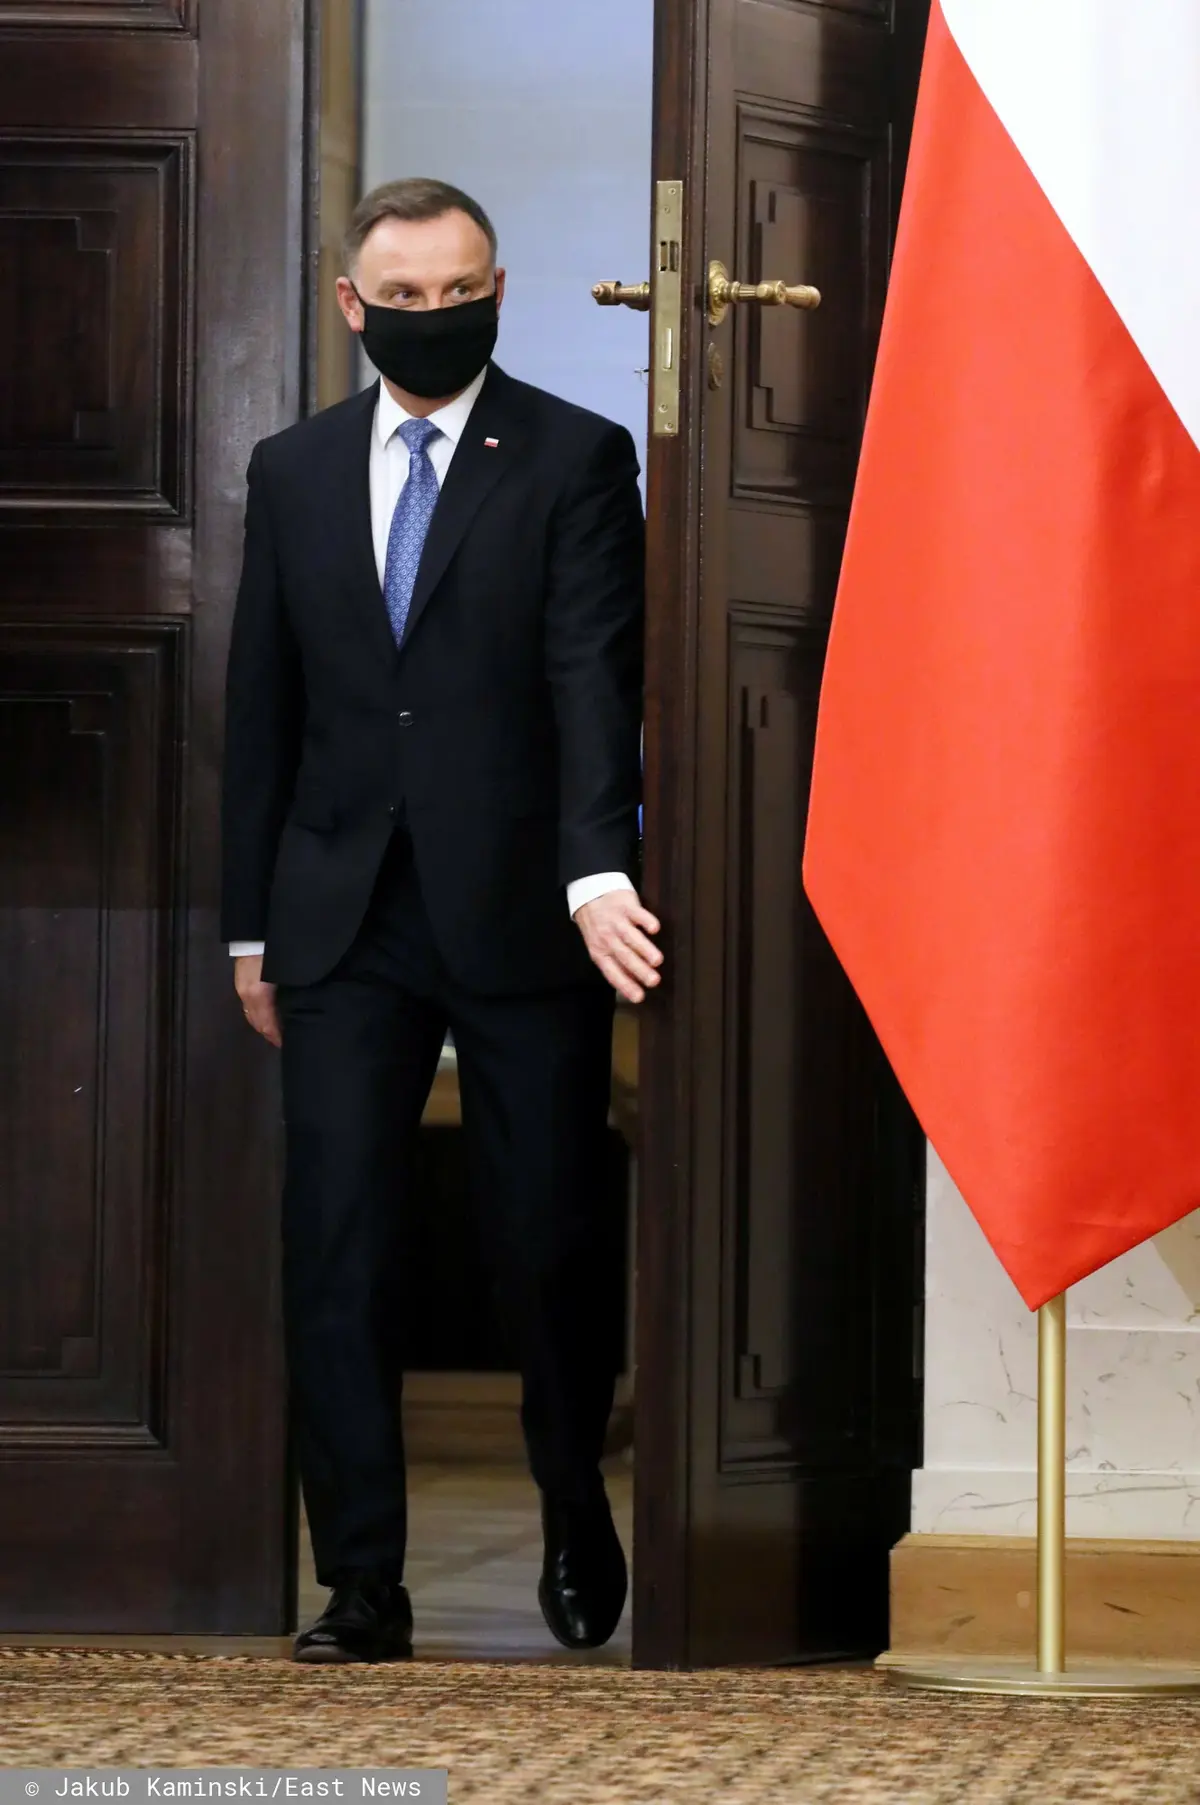 Andrzej Duda wchodzi przez drzwi